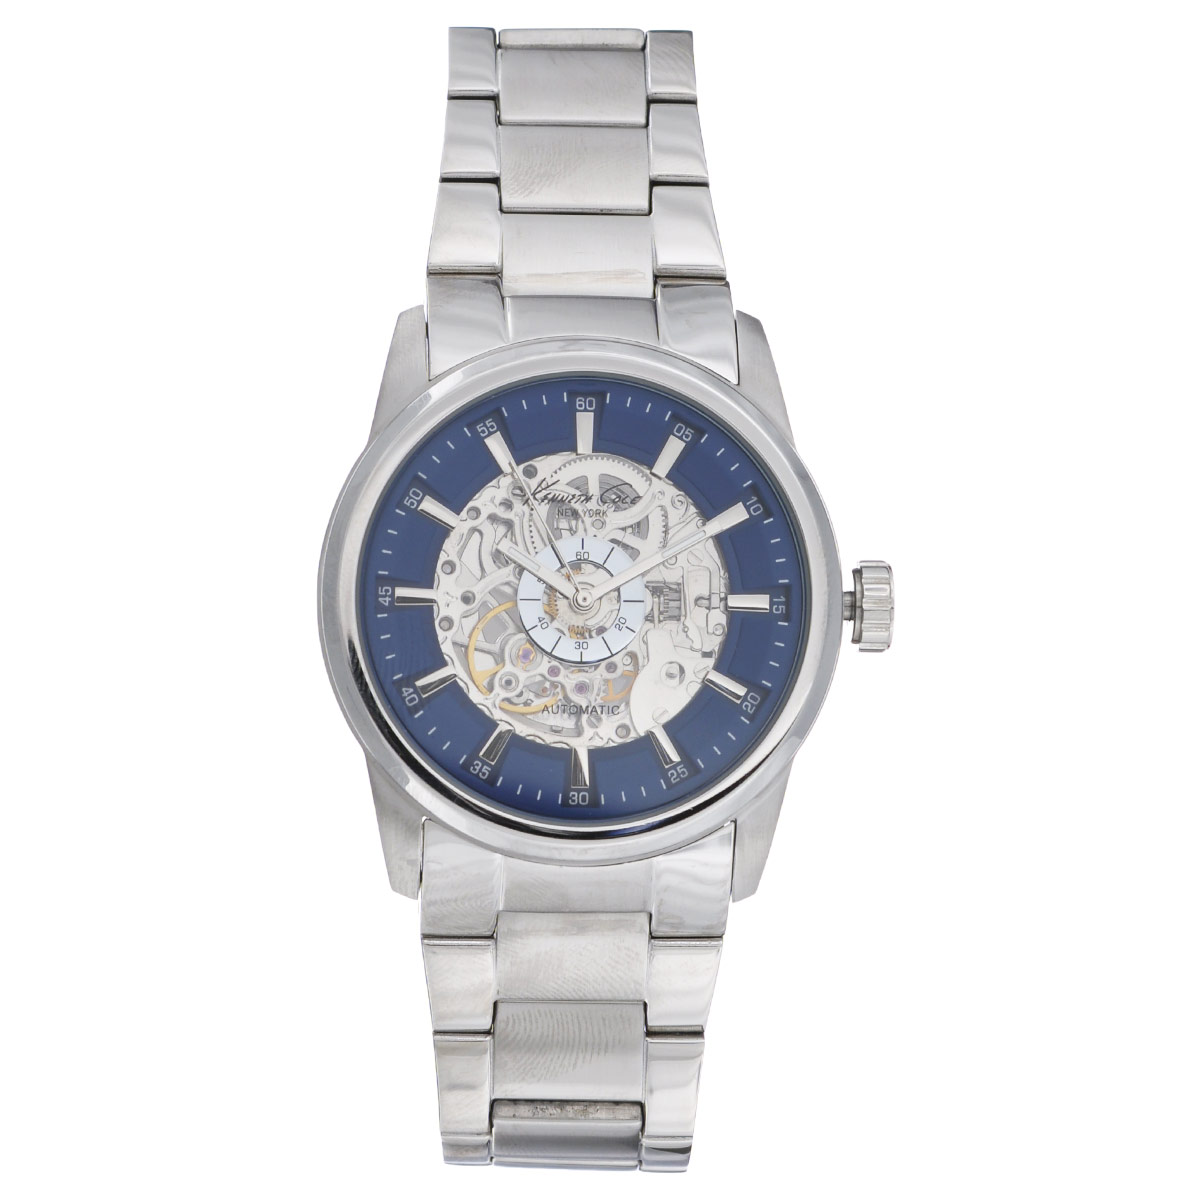 Часы мужские наручные Kenneth Cole, цвет: серебристый, синий. 10019489